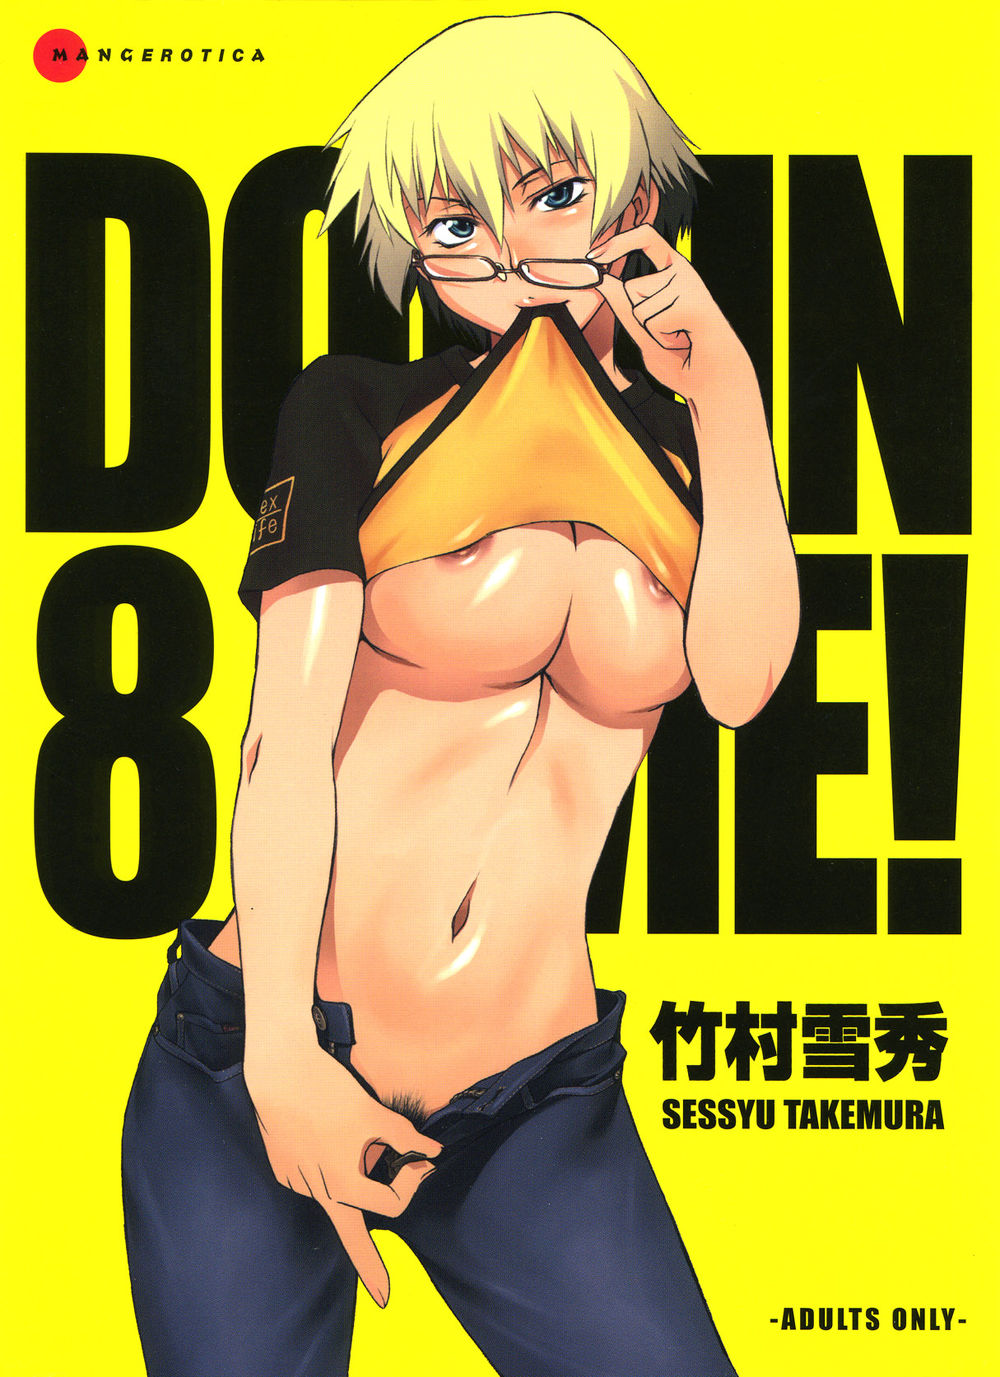 Hentai Manga Comic-Domin-8 Me!-Read-1